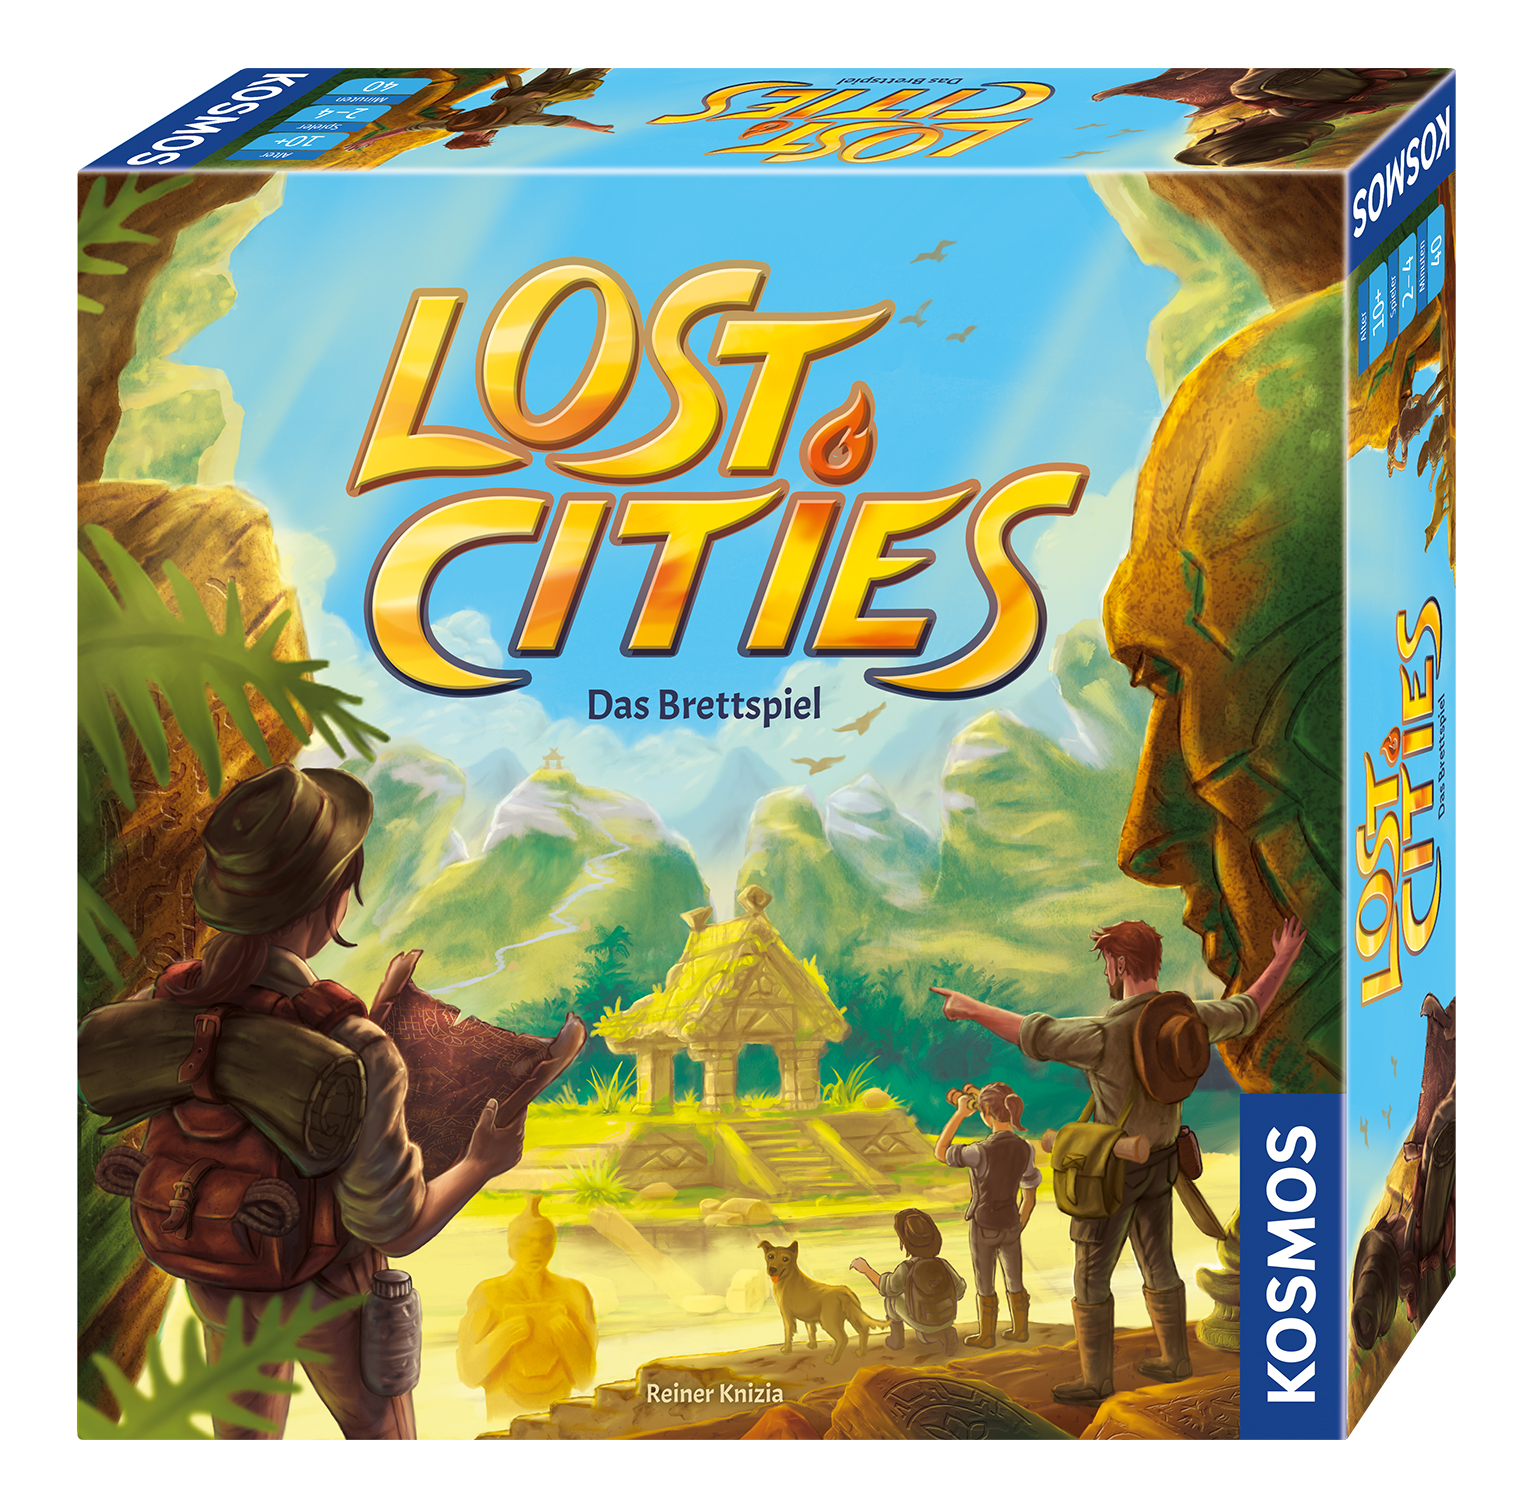 Lost Cities erscheint im März als Neuauflage